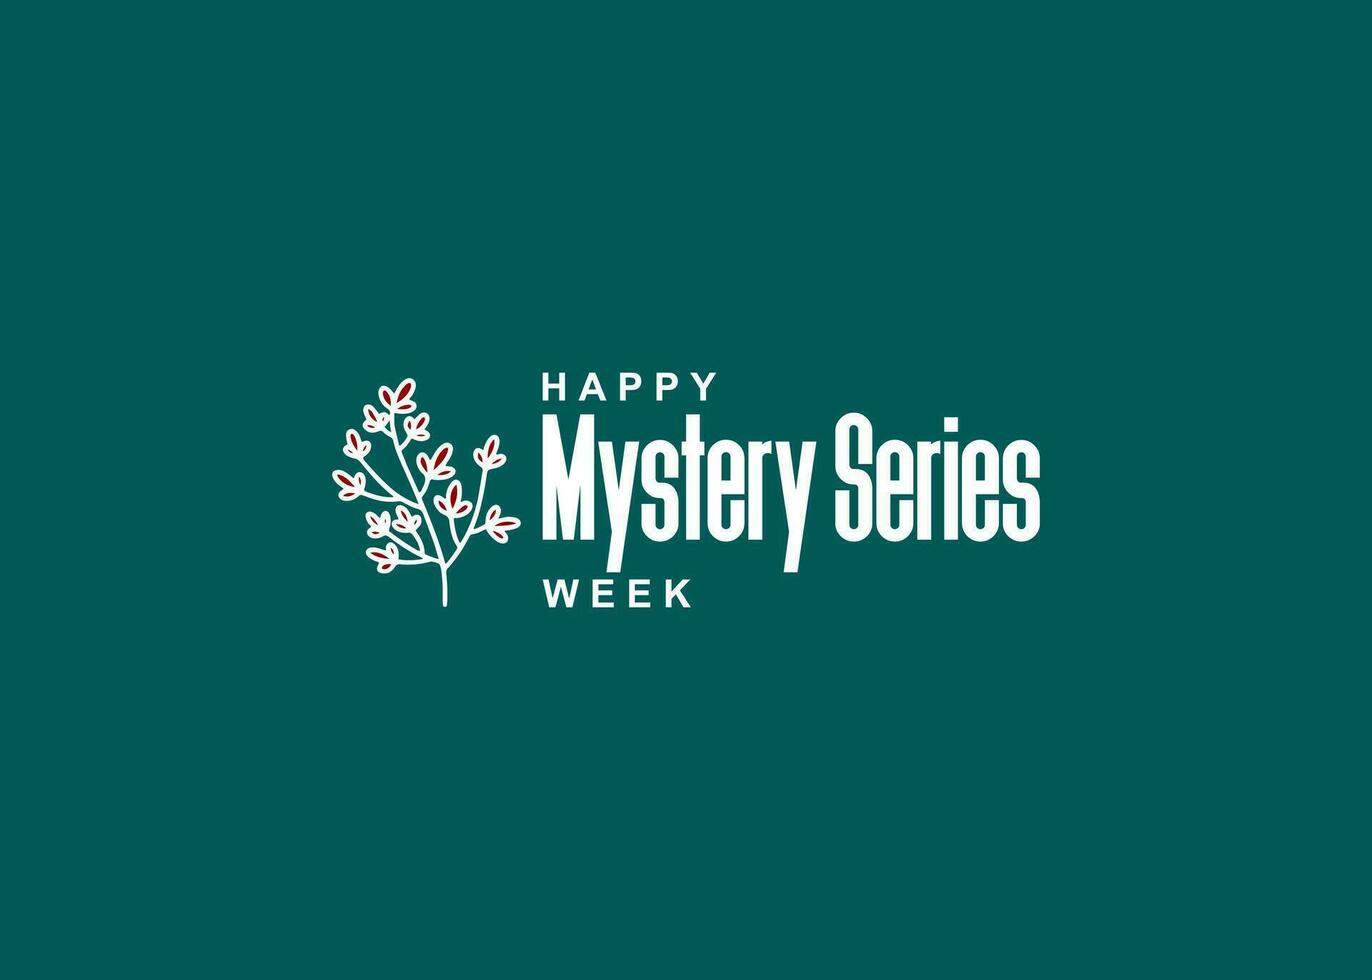 Mystery Series Week vector